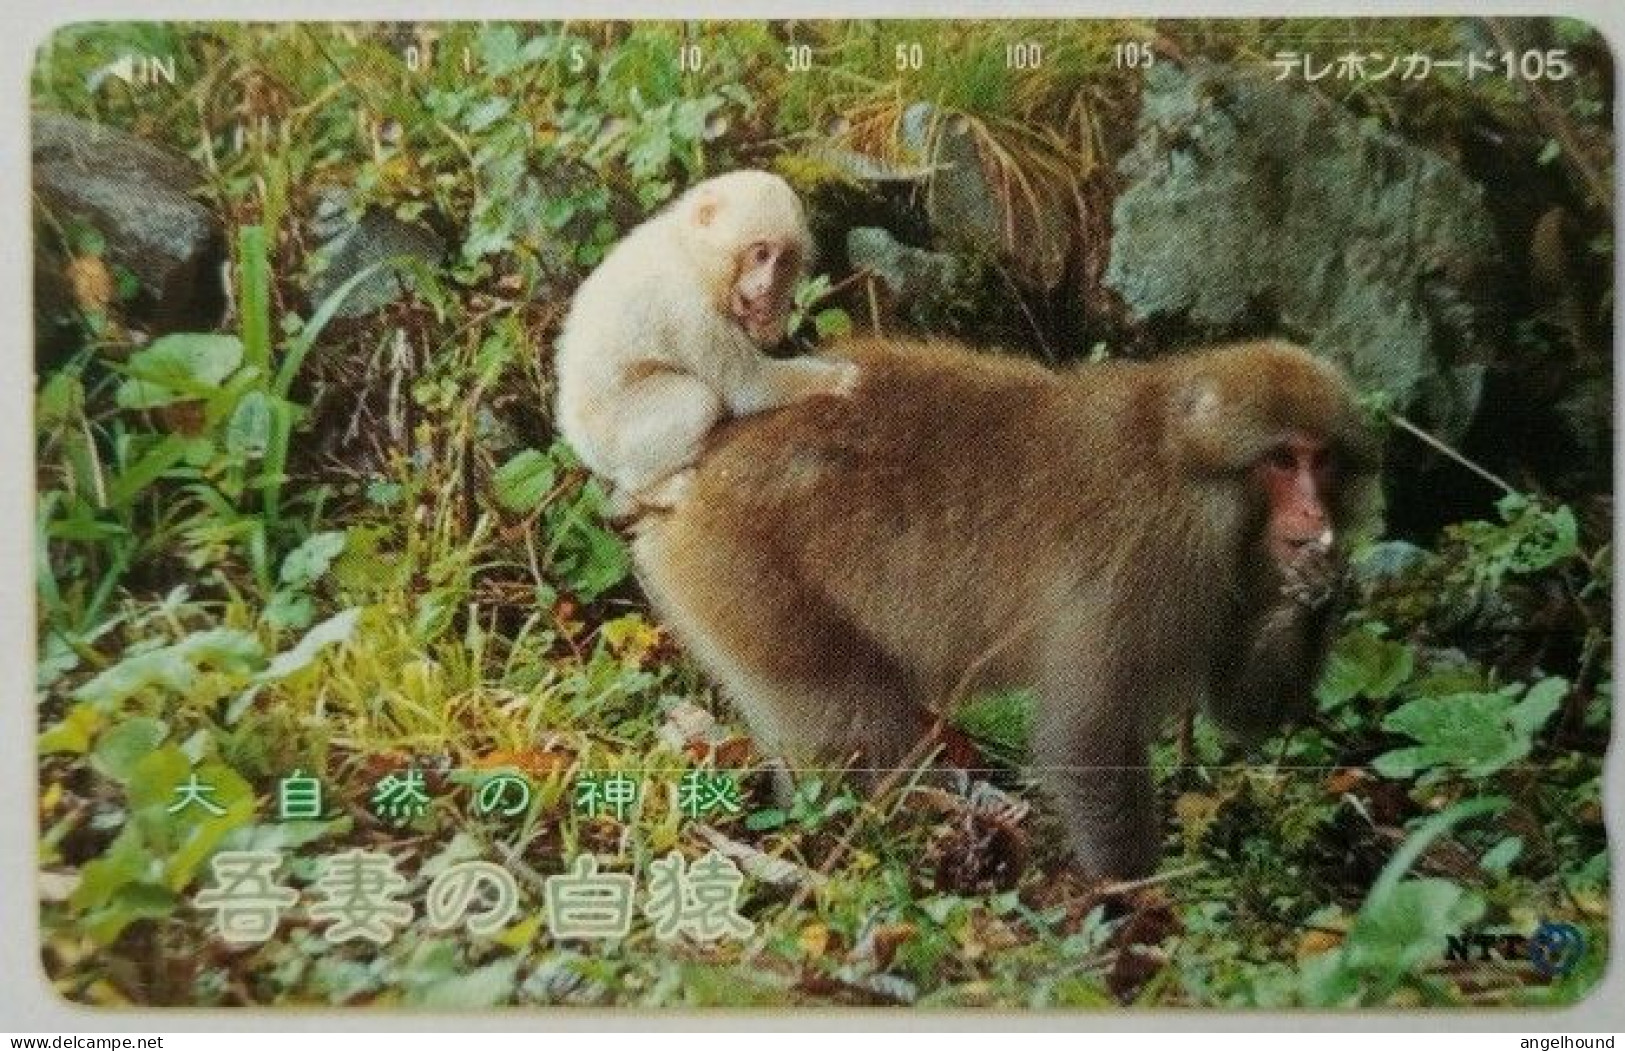 Japan 105 Units - Nature's Kandoriha Azuma's - White Monkey - Giappone